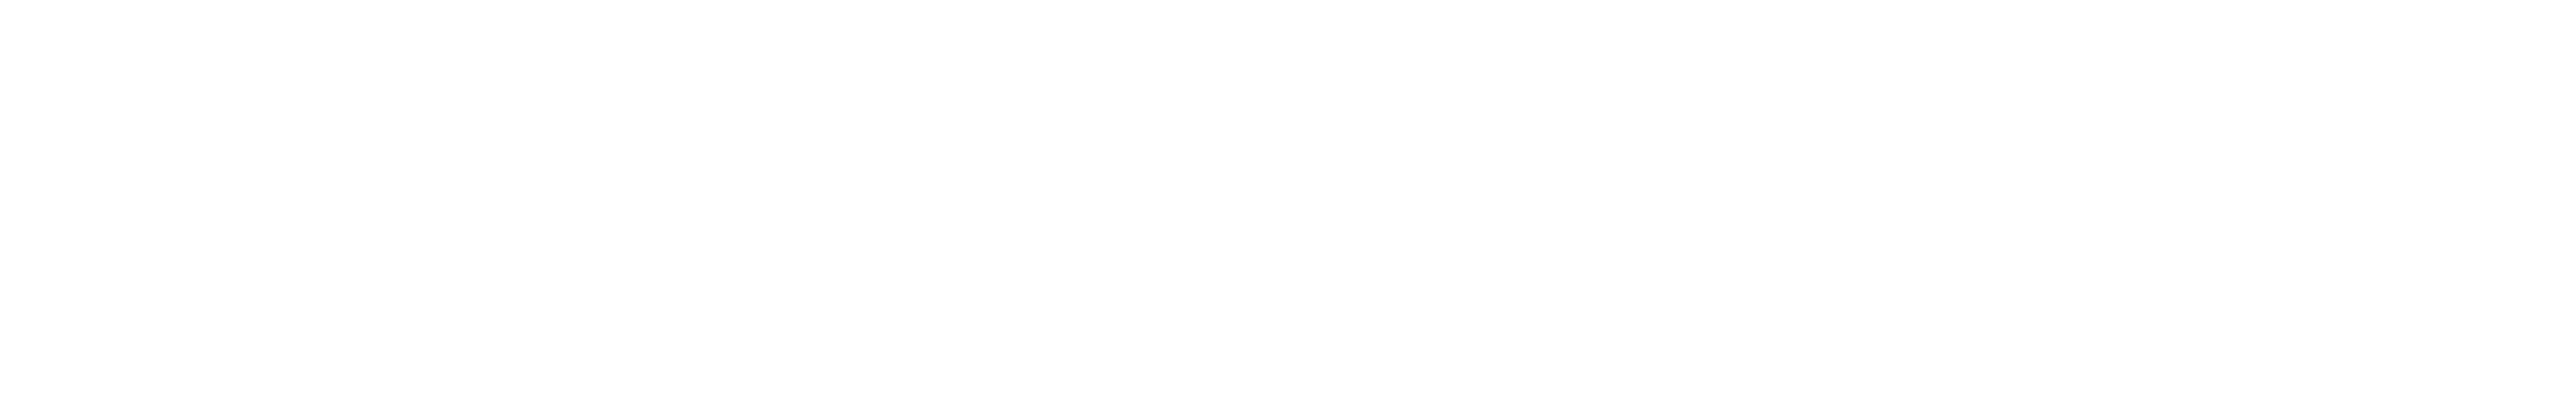 cq-series-logo